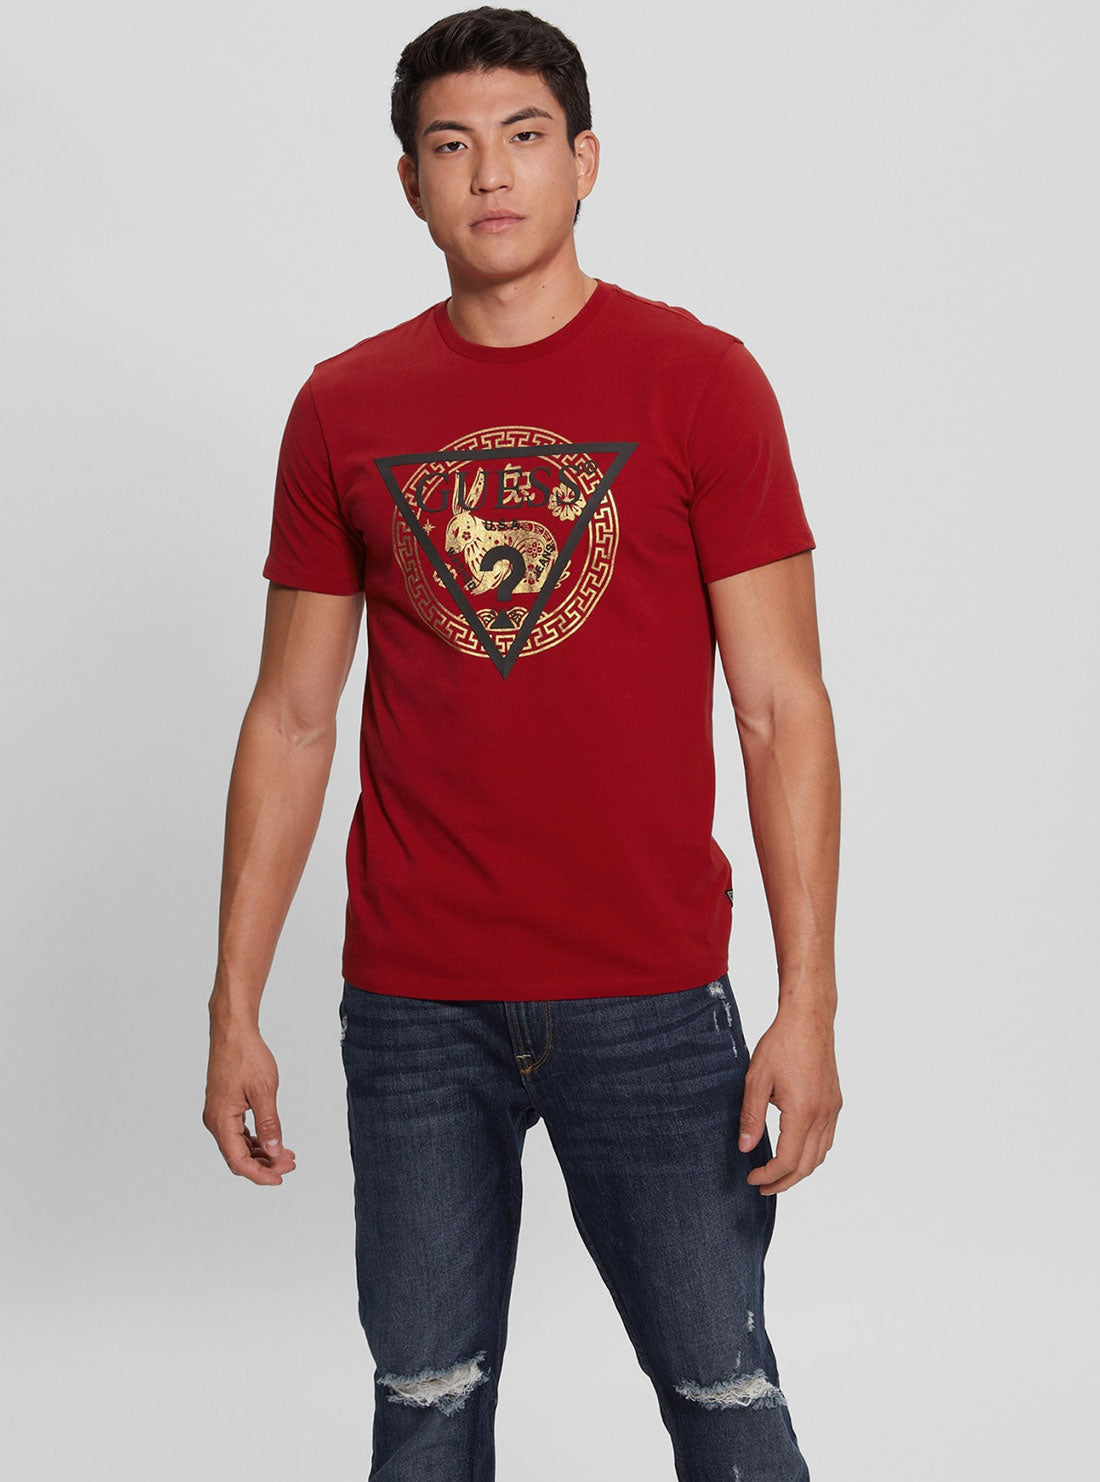 GUESS Men's Red Golden Rabbit Logo T-Shirt Front View